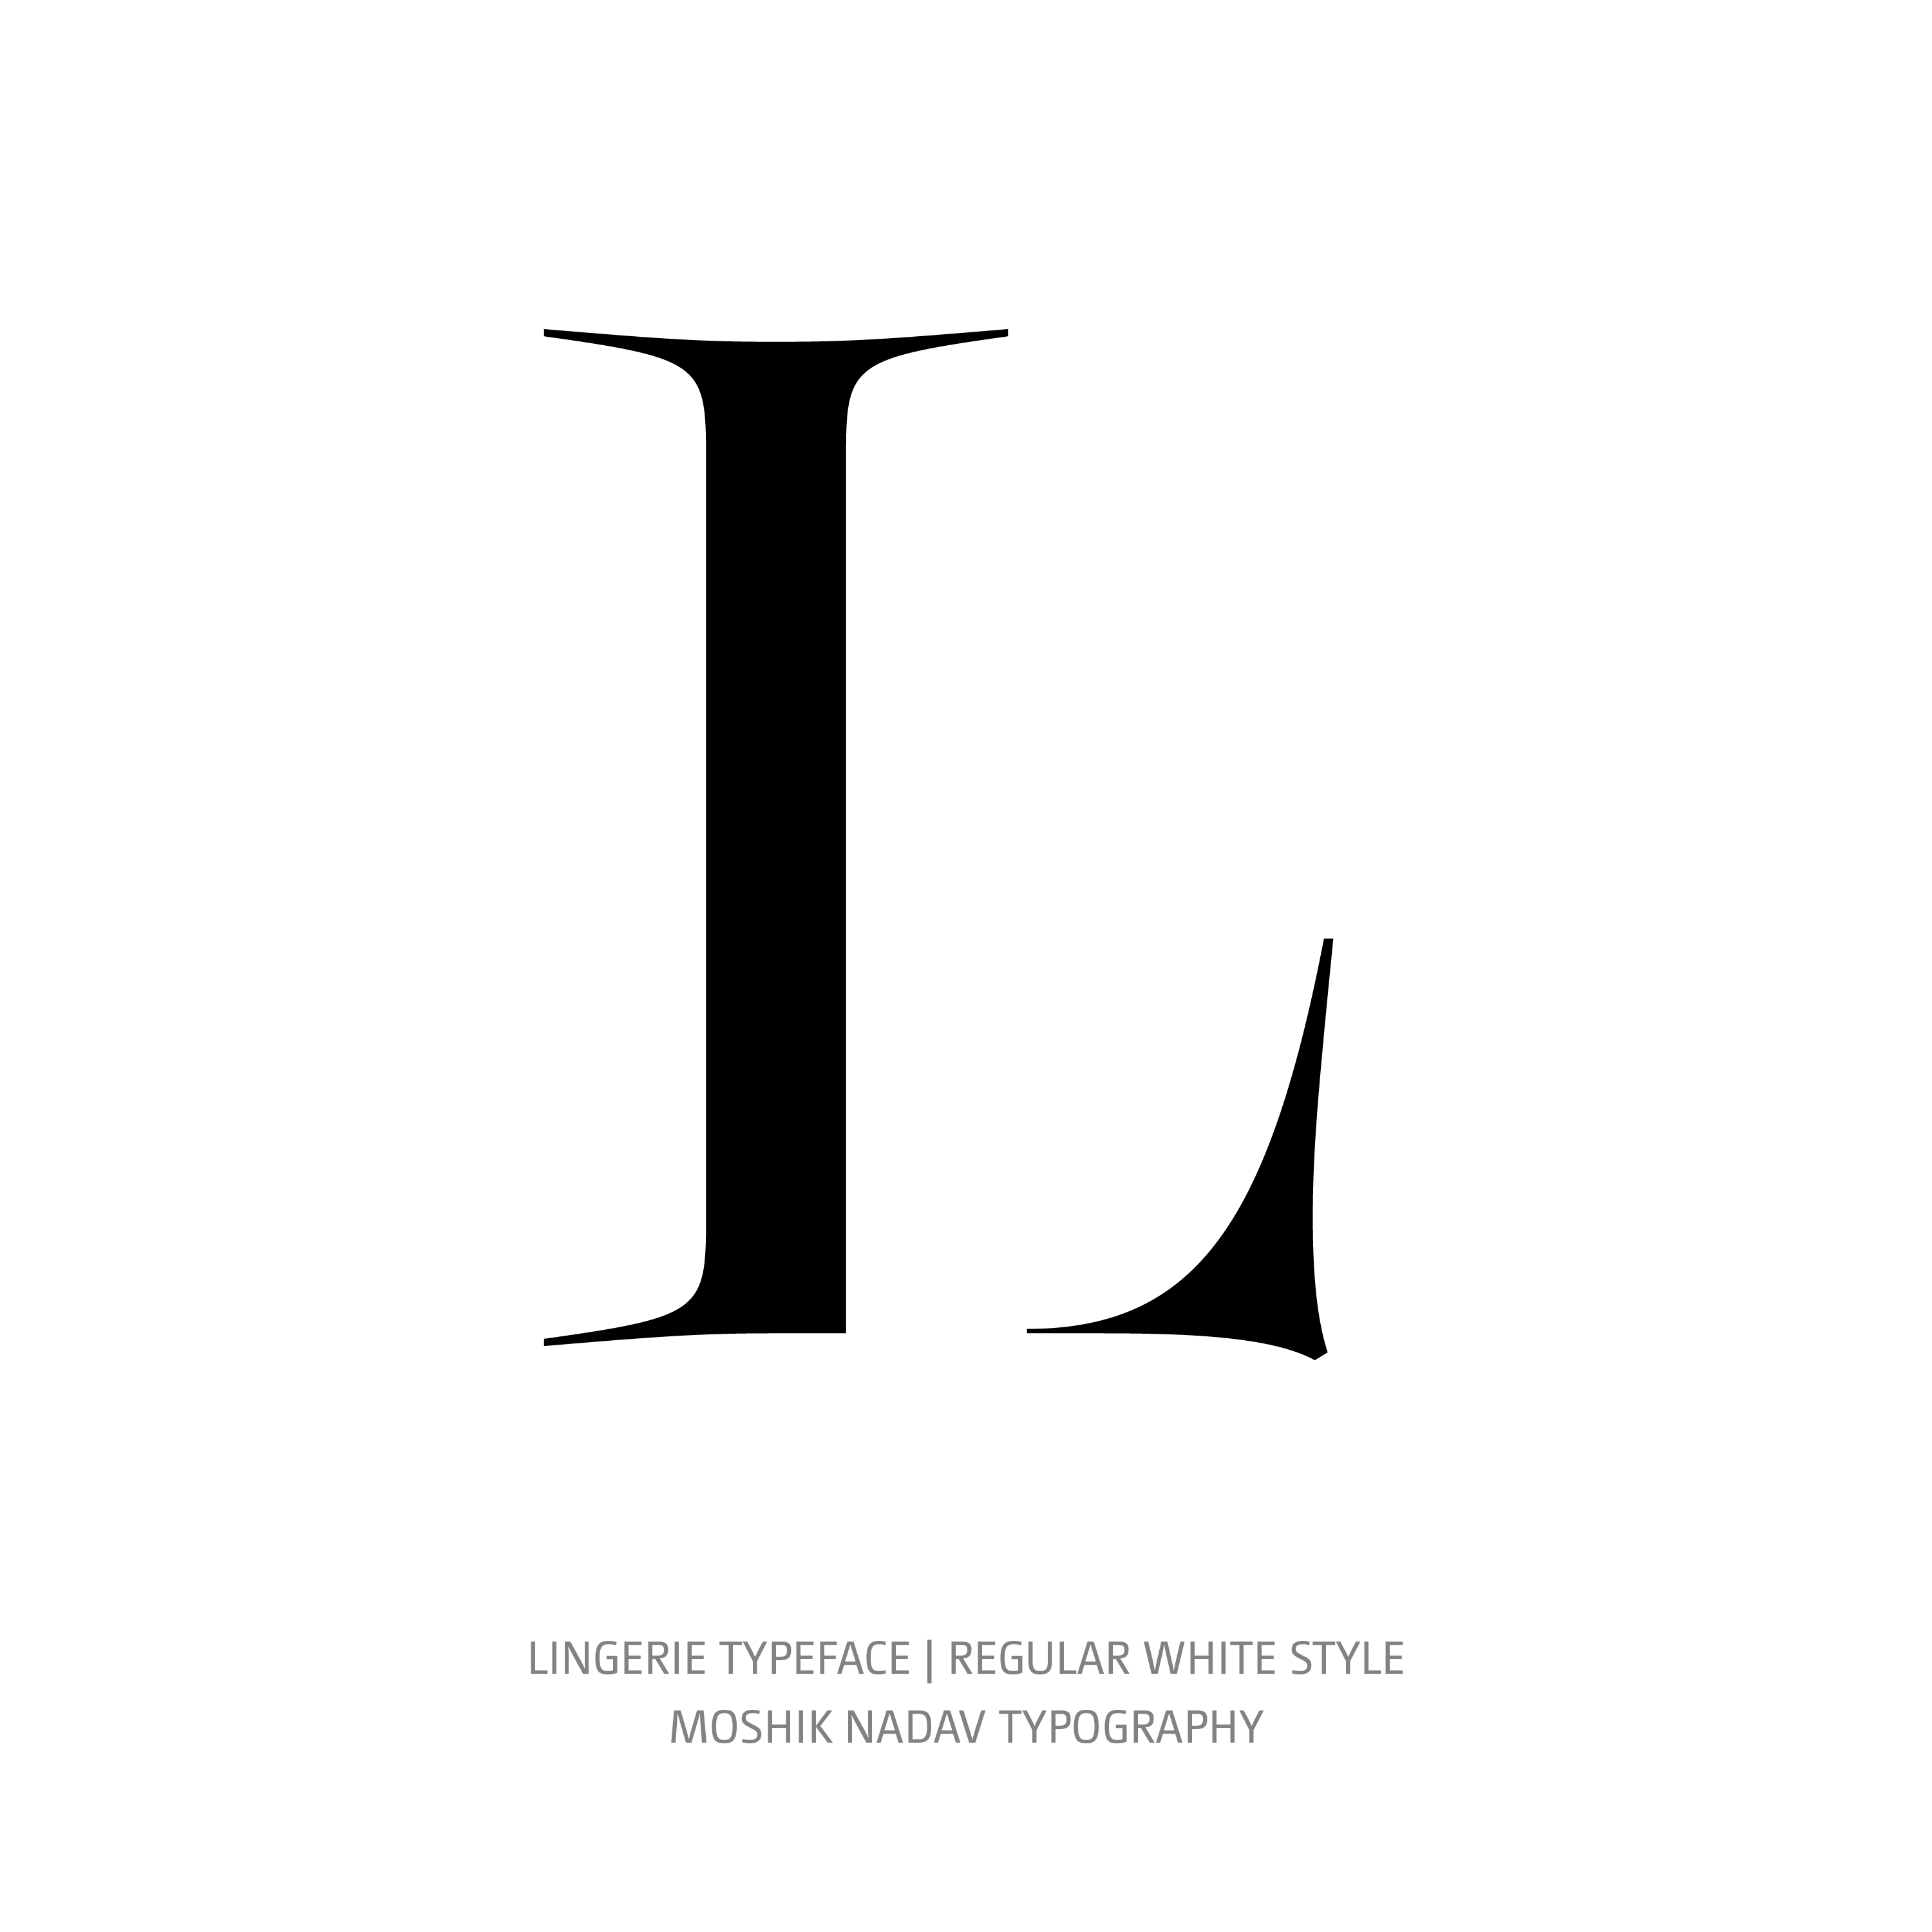 Lingerie Typeface Regular White L